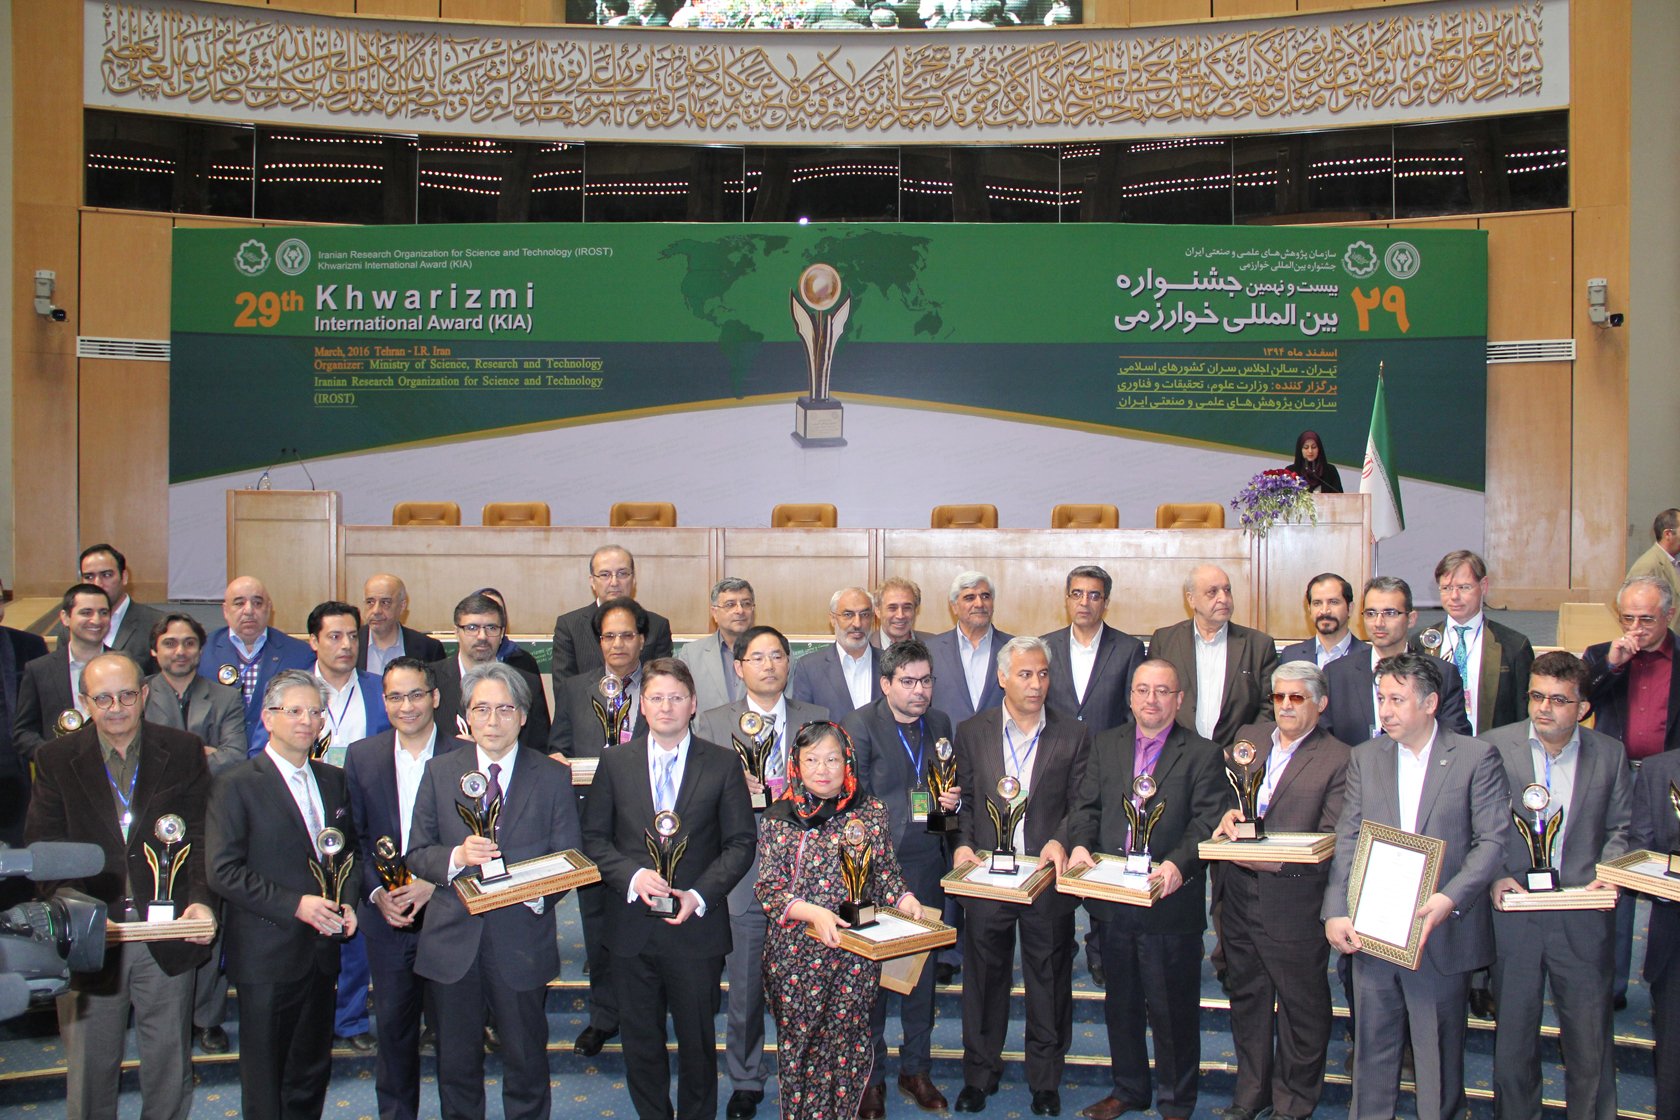 Group photo of Iranian leaders and the Laureates. Image courtesy: Khwarizmi International Award